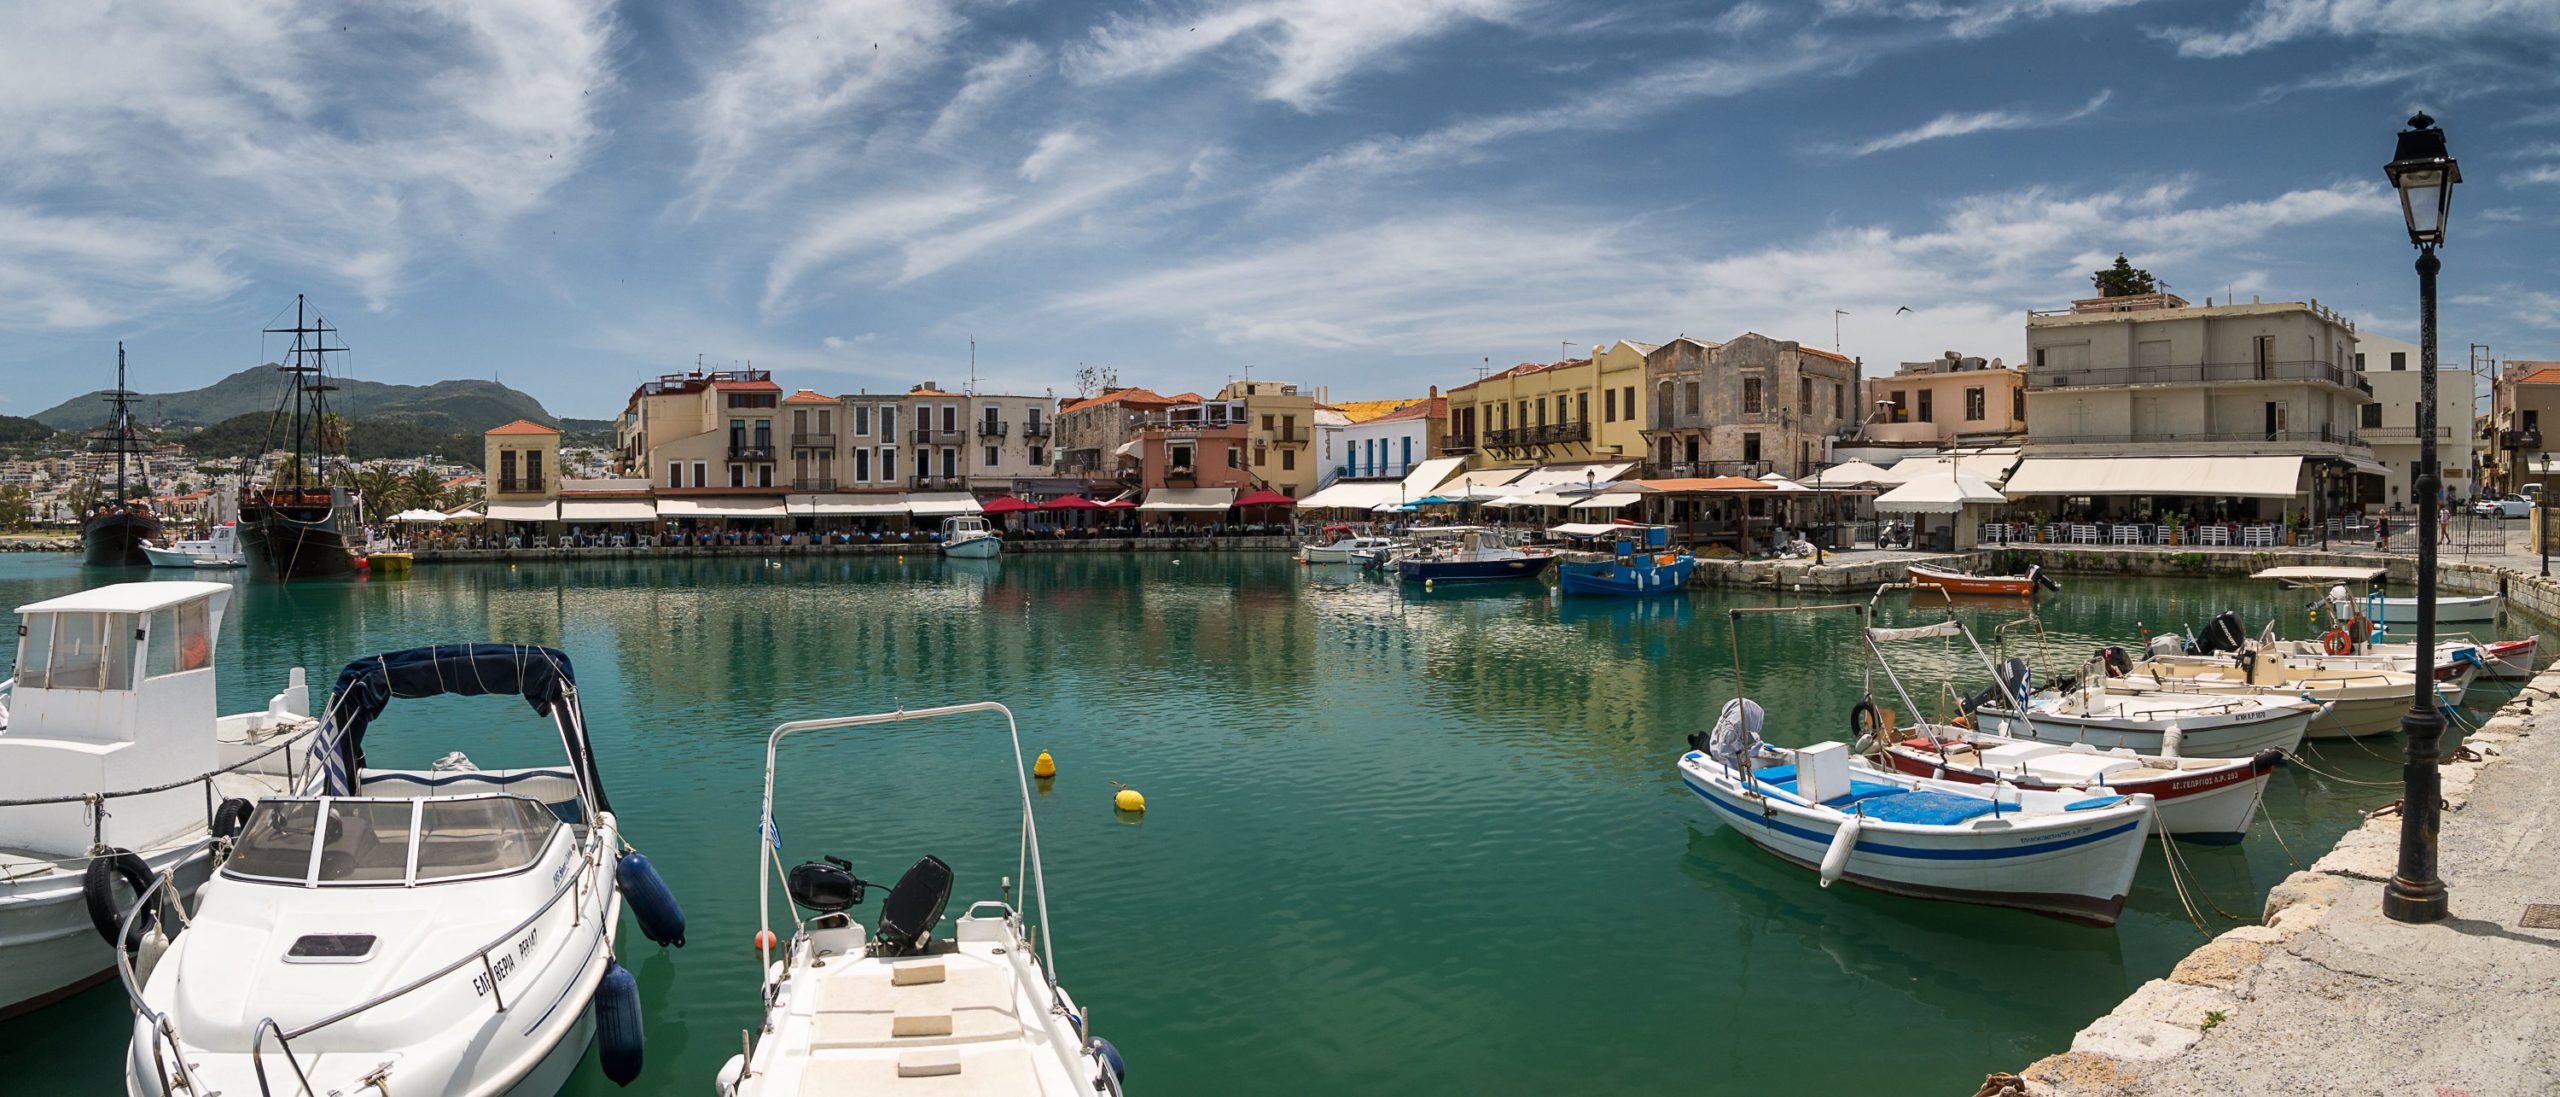 Reisebericht Kreta - Teil 2: Rethymnon die Erste